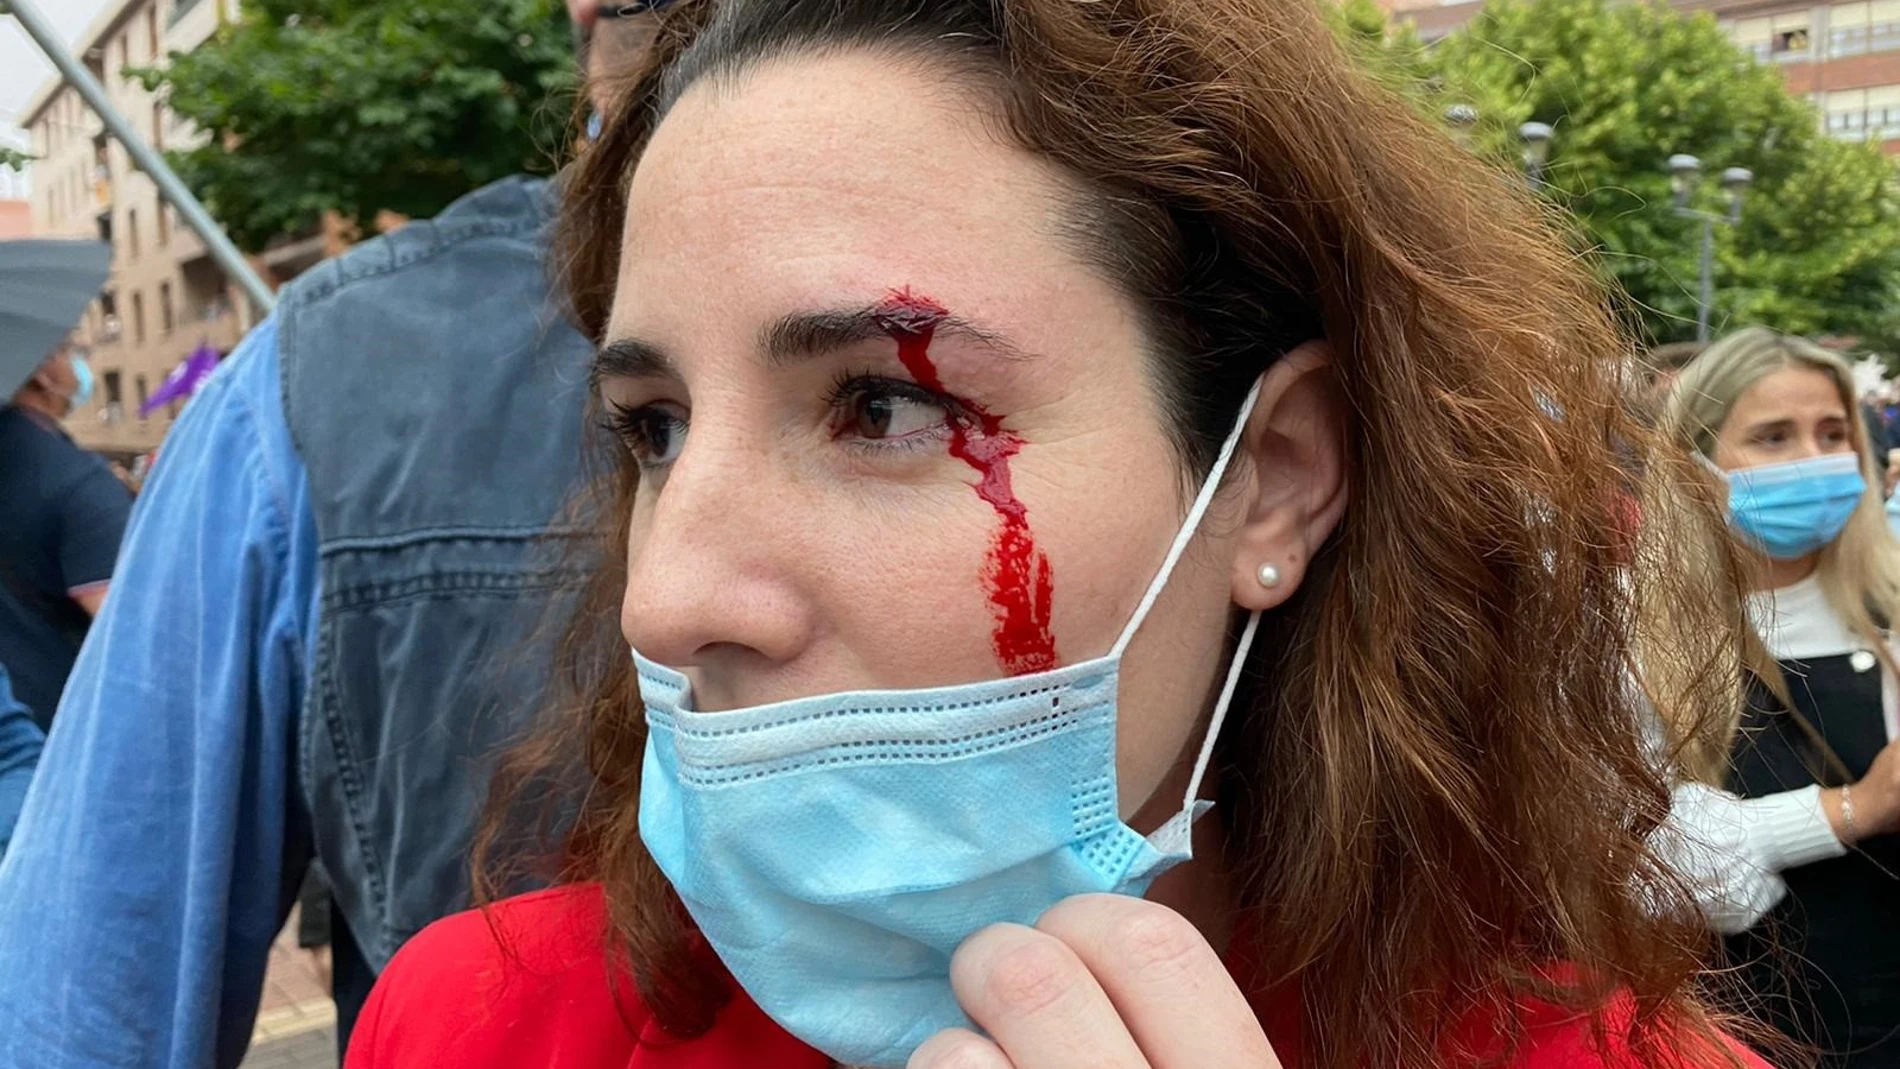 La diputada de Vox Rocío de Meer sangrando de una ceja tras recibir una pedrada en Sestao (Bizkaia)VOX26/06/2020